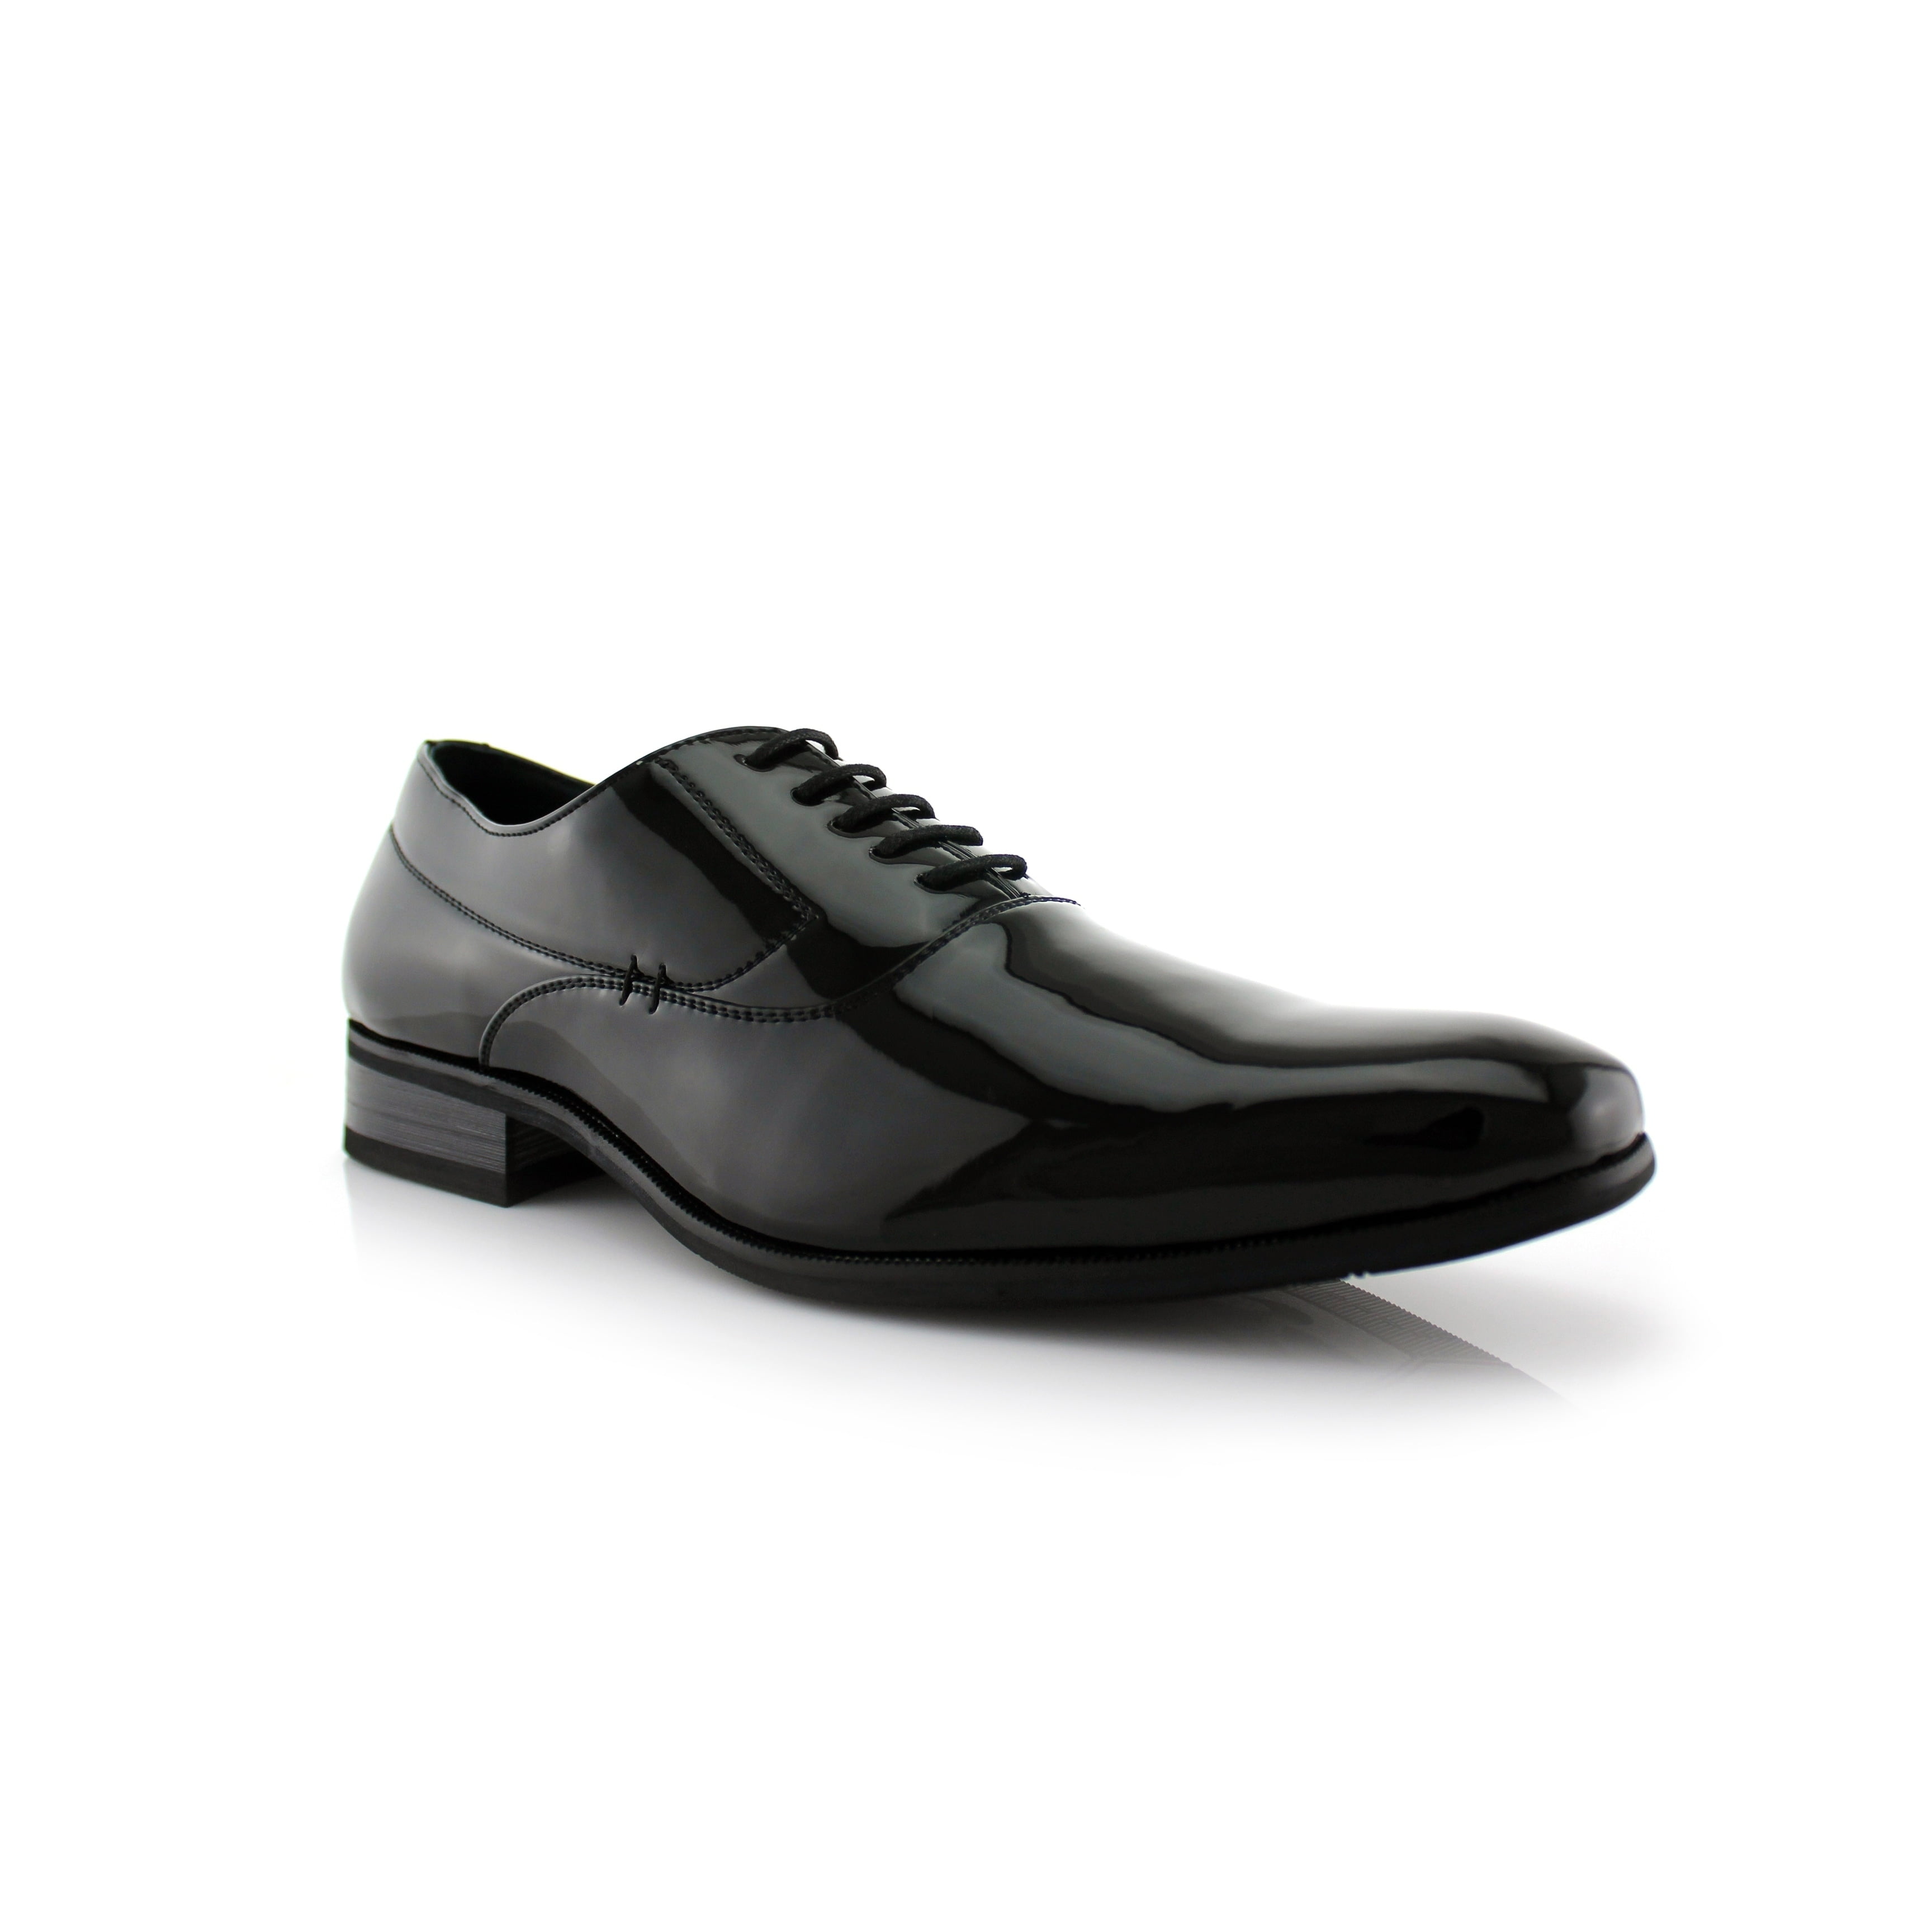 Delli Aldo - Delli Aldo Frank M19121PL Men's Dress Shoes for Work or ...